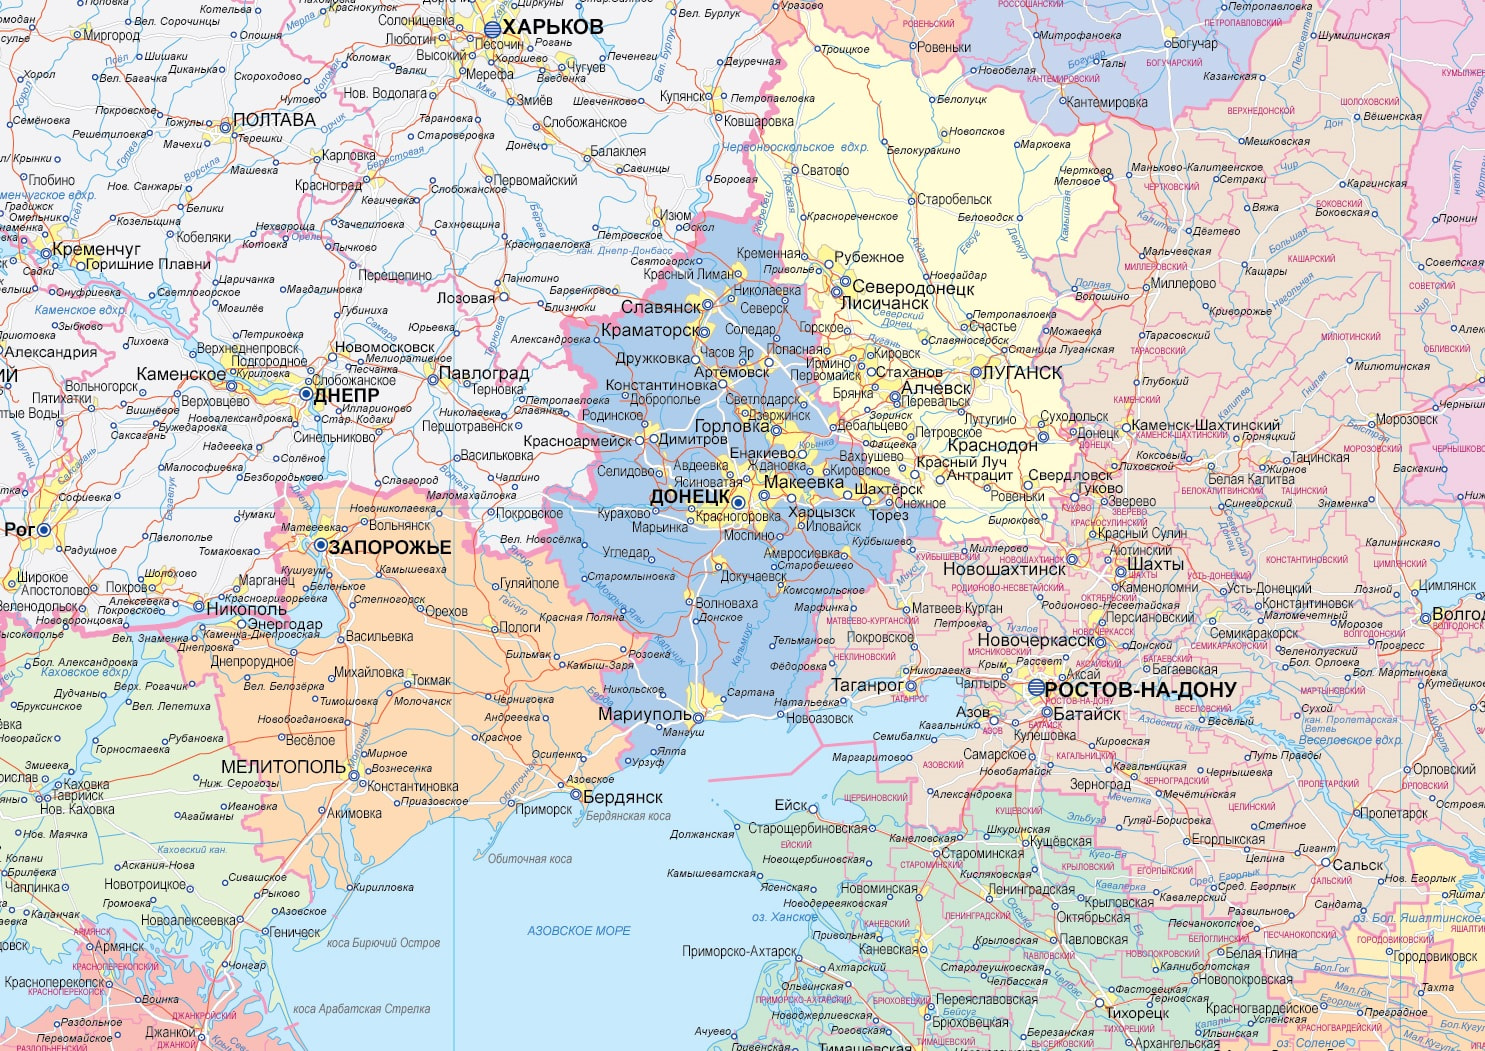 Граница рядом с украиной. Карта Украины. Границы Украины на карте. Граница России и Украины на карте. Карта Украины граница сросией.